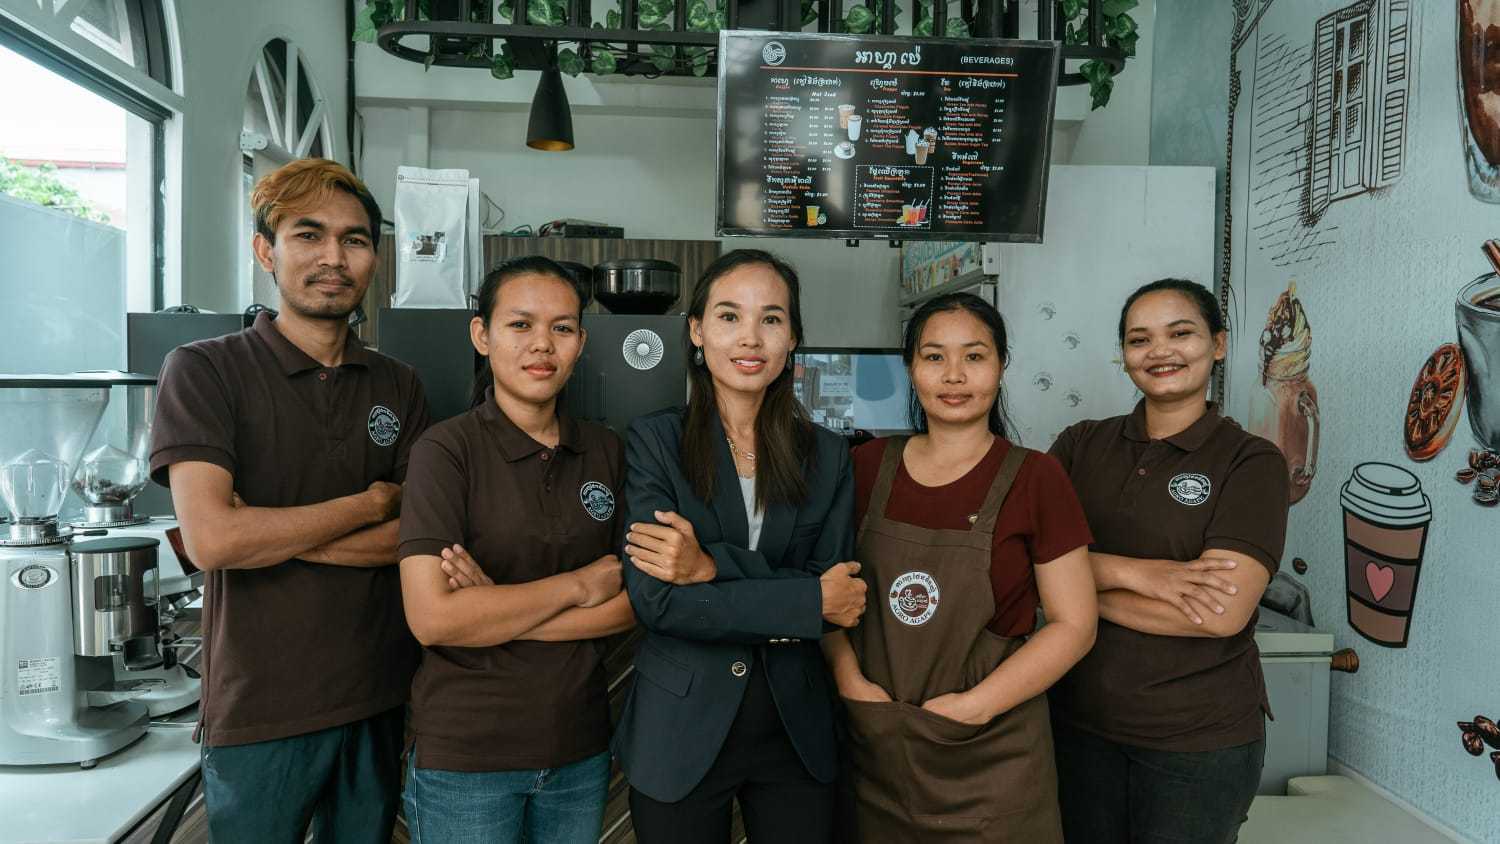 【女性起業家の挑戦】起業を通じた社会課題解決 第二回 - カンボジア産コーヒーにかける思い